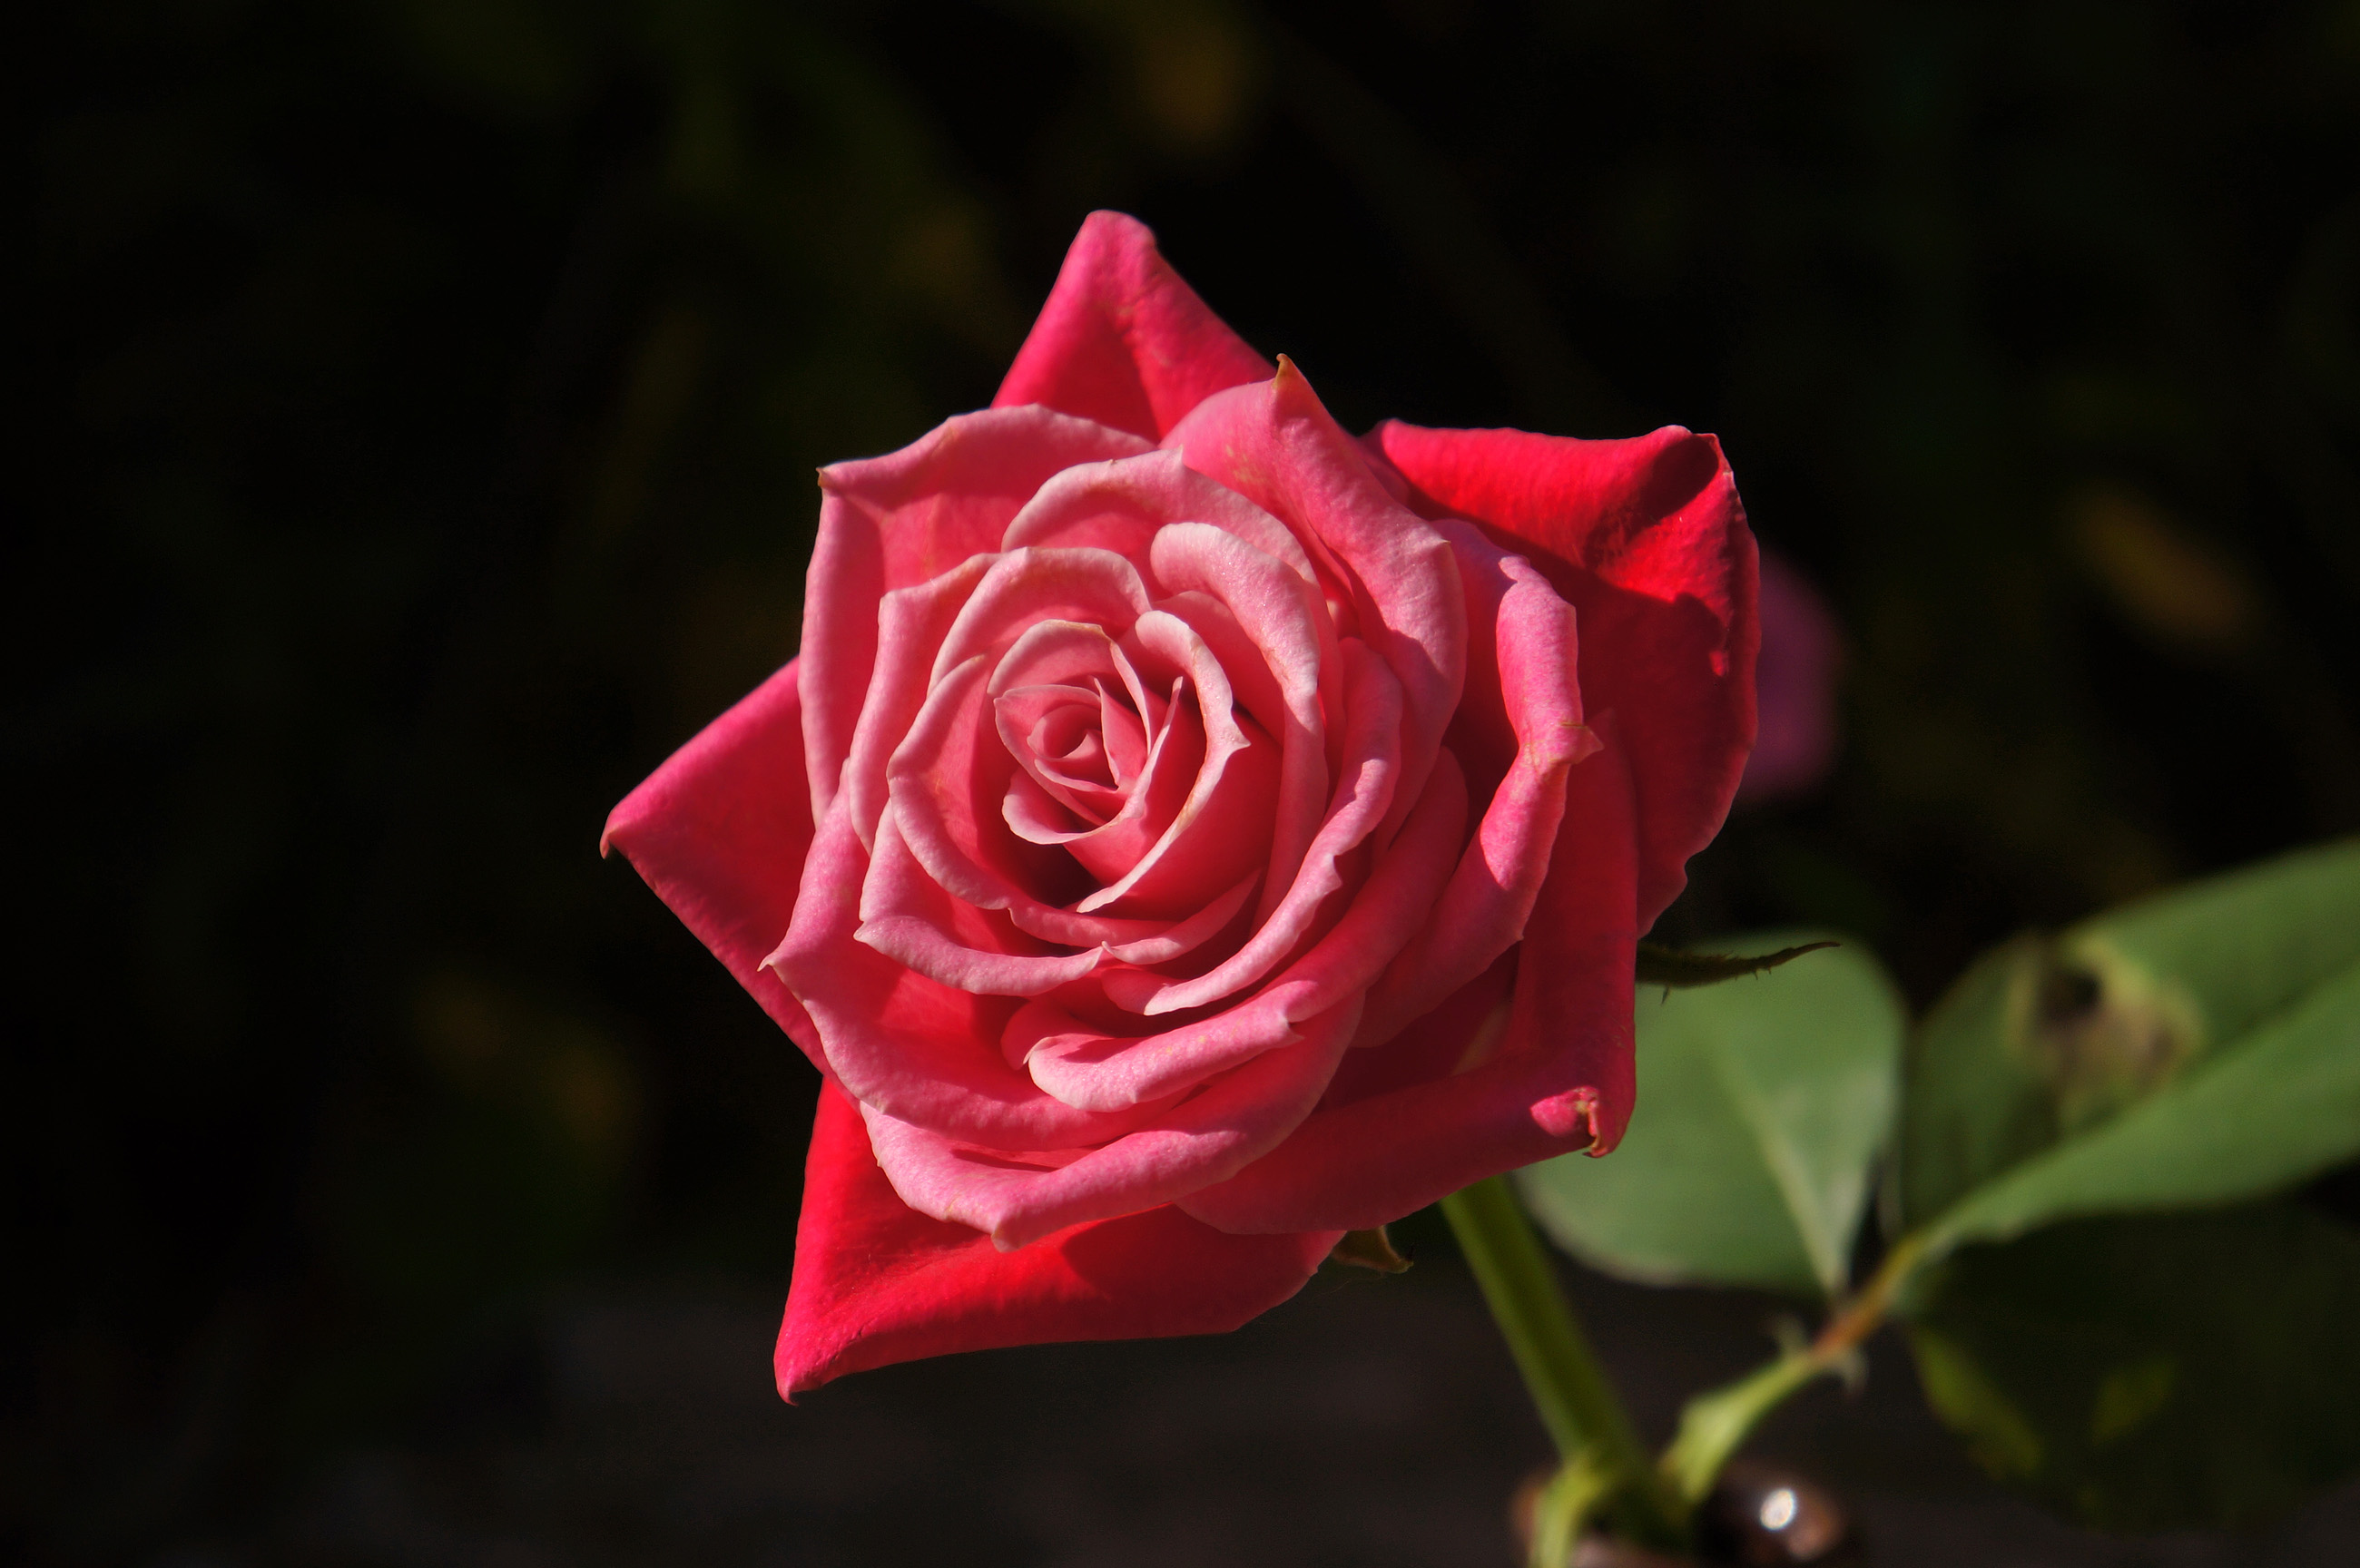 赤いバラ 真紅の薔薇の写真 高解像度画像 デスクトップ壁紙 無料素材 フリー素材 商用利用可能 Hp用素材 ミラーレス Sony Nex 5n 大きな写真 絵ココロ レビュー 感想 子育て 料理 豆知識 美容 健康 イラスト Cg